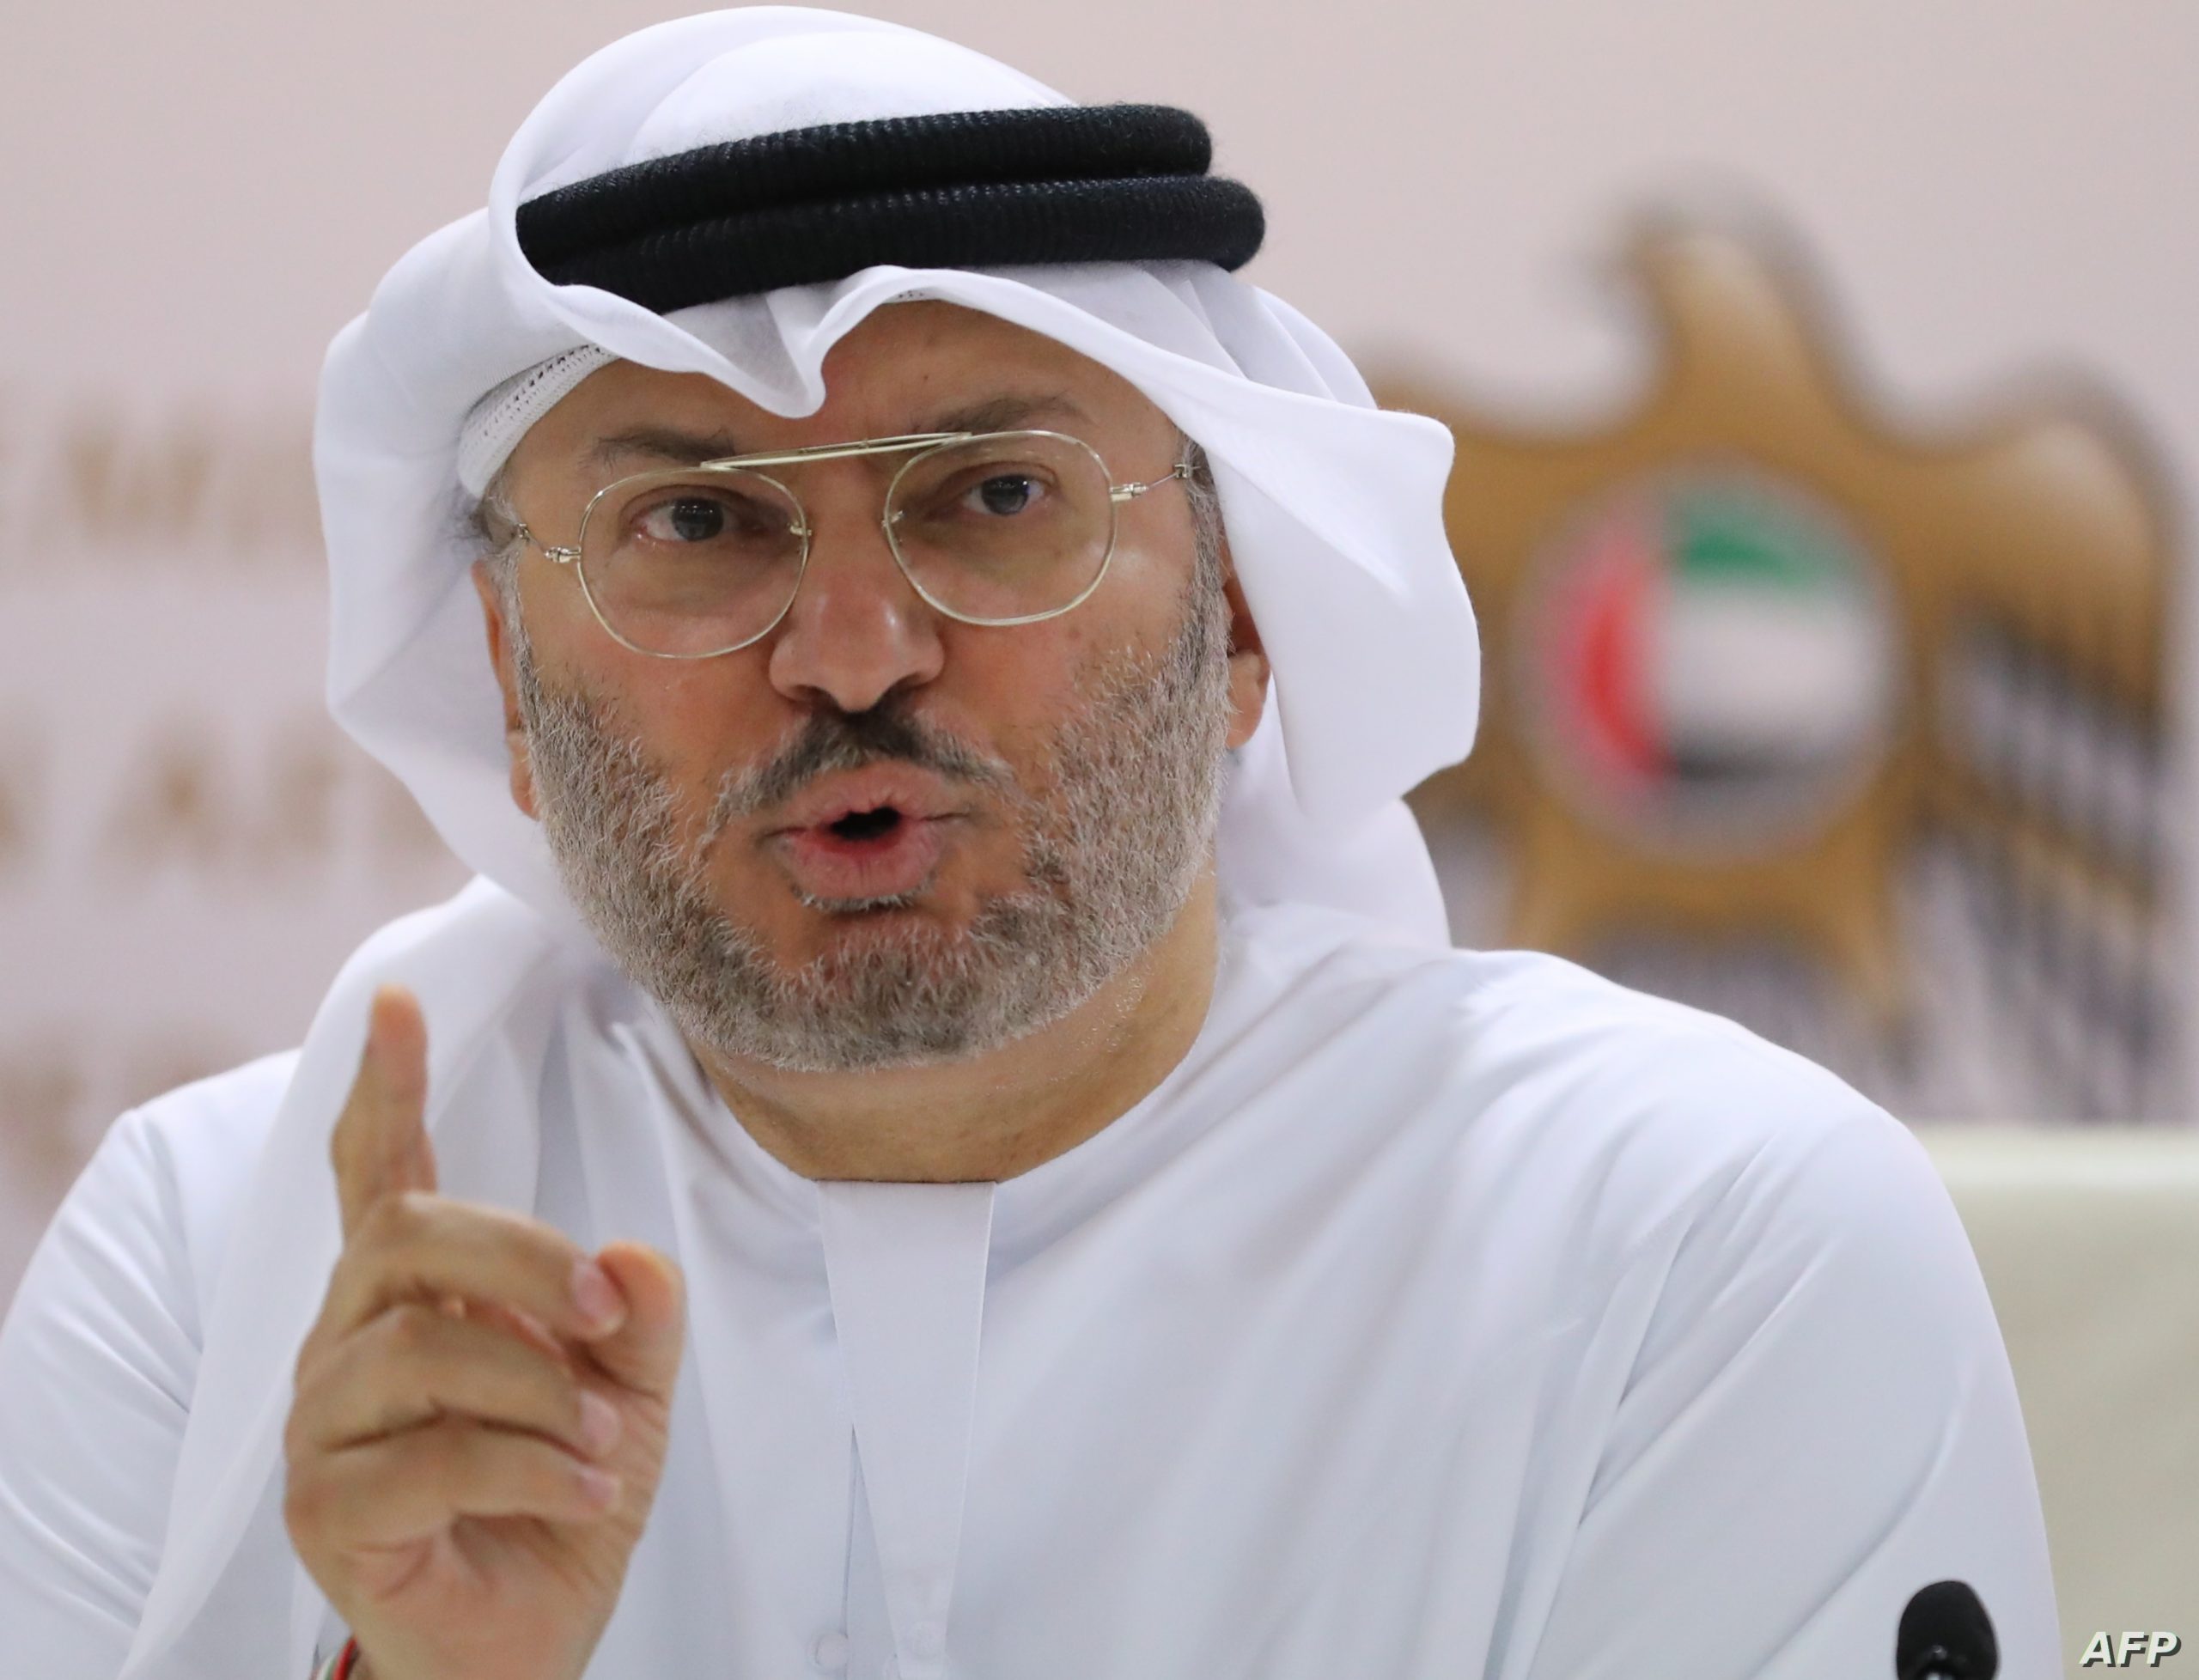 المستشار الدبلوماسي لرئيس الإمارات: “الاستقرار في العراق هو استقرار المنطقة وتعزيز أمنها”..